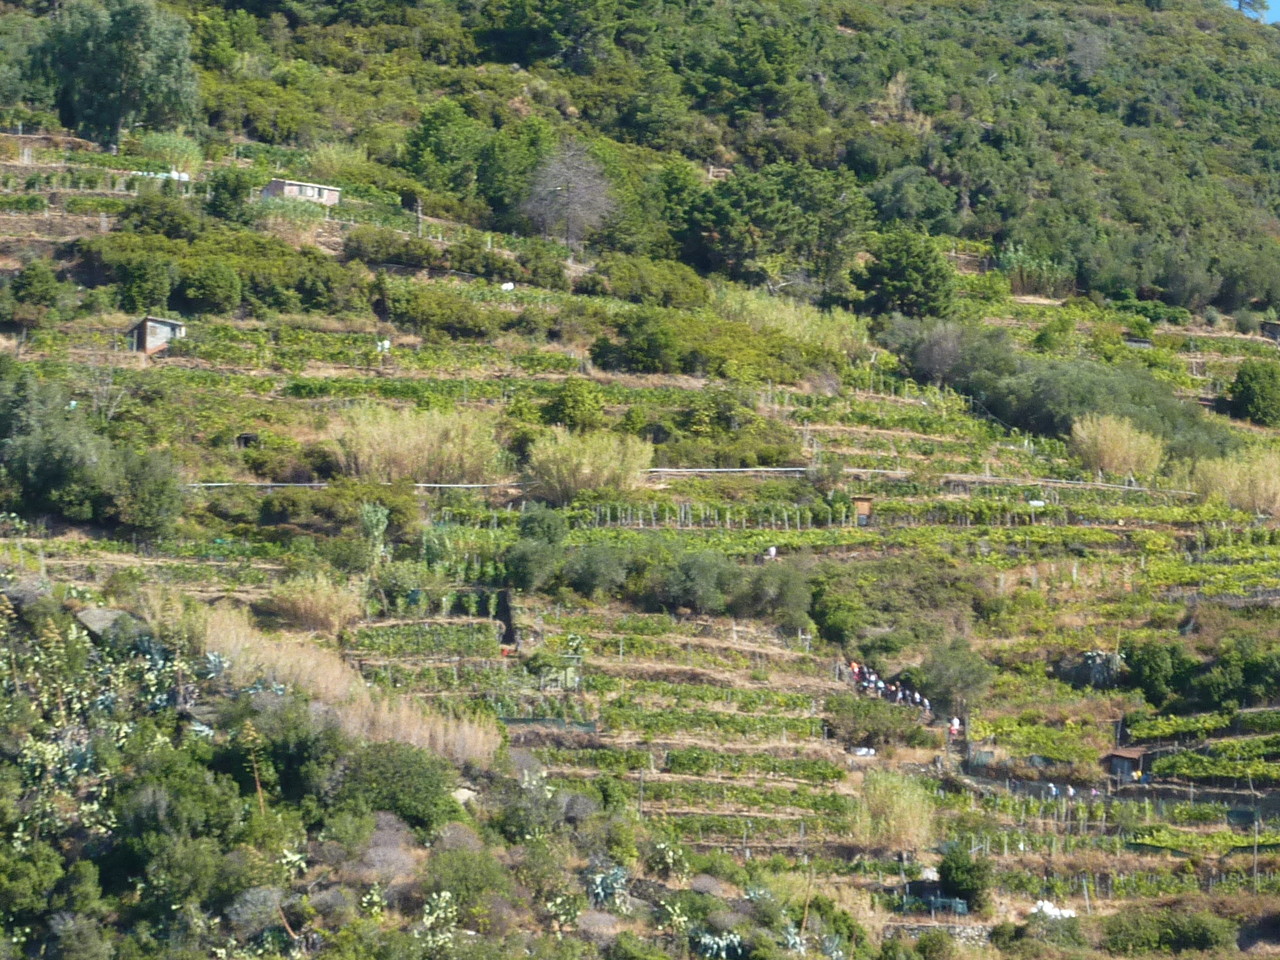 Côteaux très escarpés couverts de vigne , citronniers et oliviers